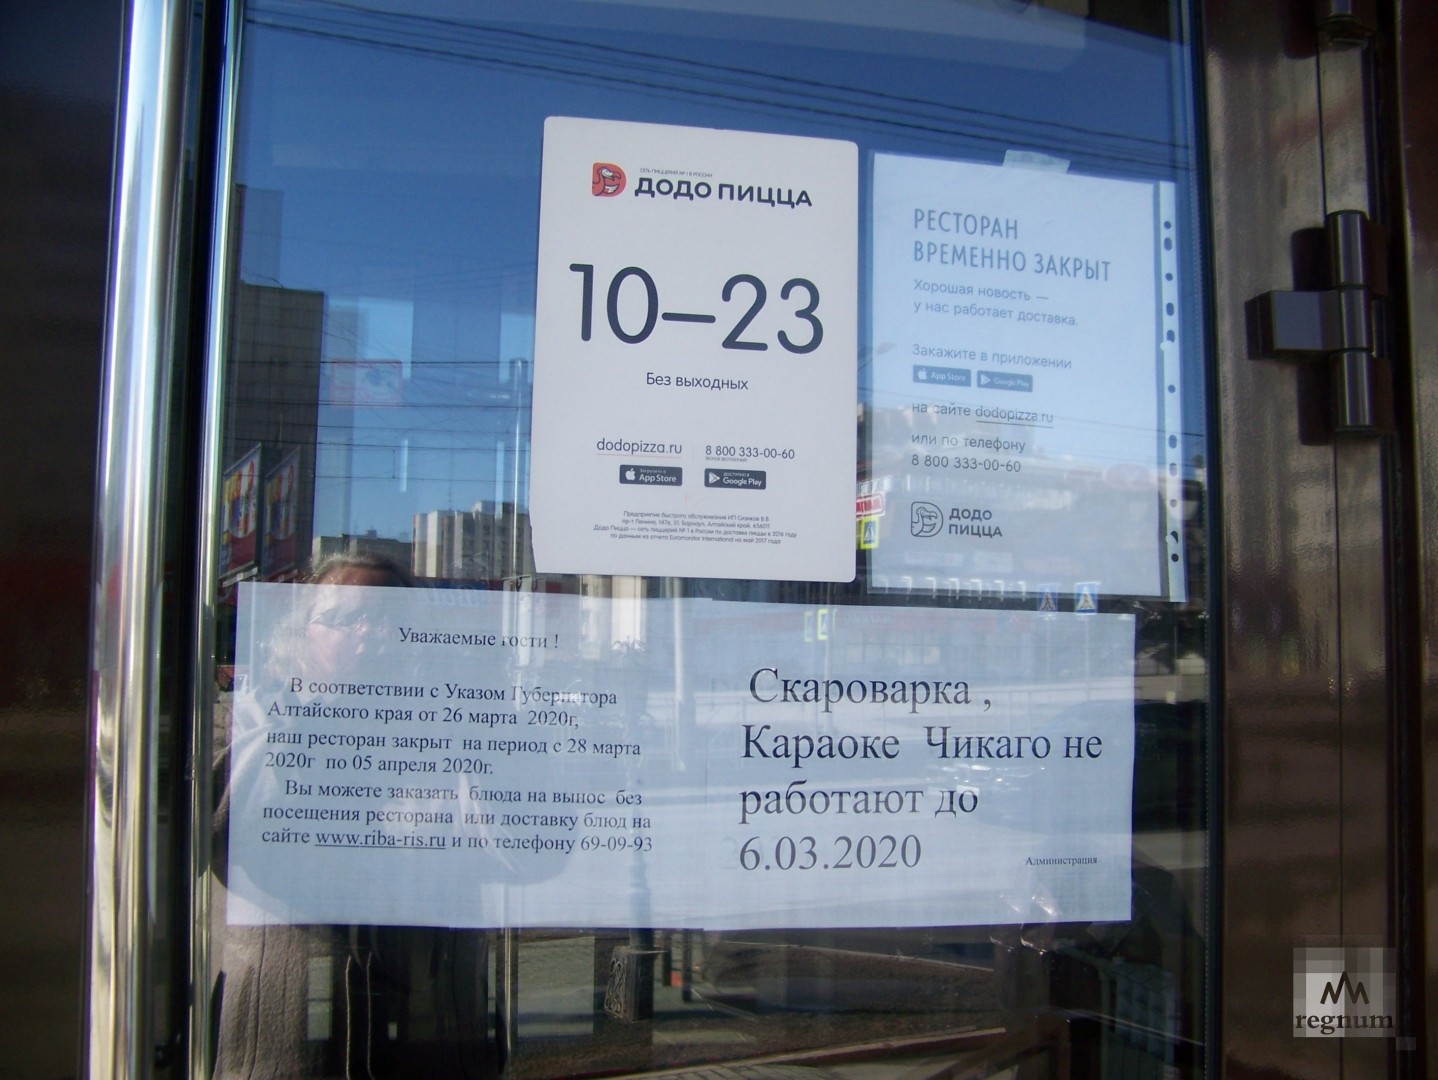 Объявление на дверях закрывшегося на карантин ресторана на проспекте Красноармейский в Барнауле